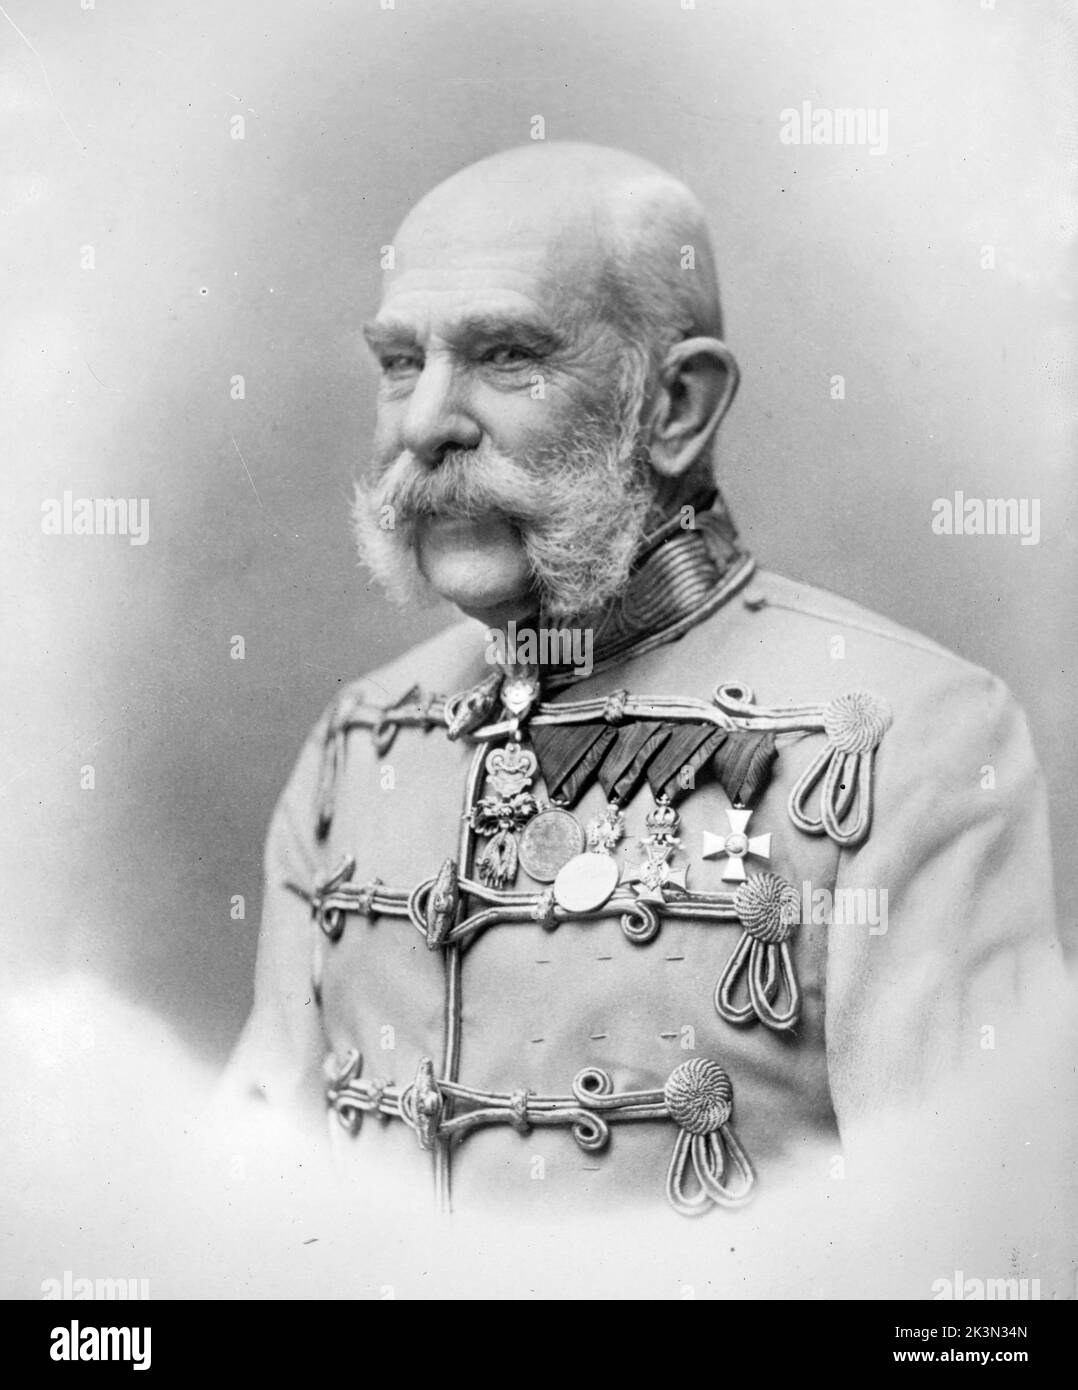 Franz Josef von Österreich, Franz Joseph I., Franz Joseph I. (1830 – 1916) Kaiser von Österreich, König von Ungarn und den anderen Staaten des österreichisch-ungarischen Reiches vom 2. Dezember 1848 - 1916. Stockfoto